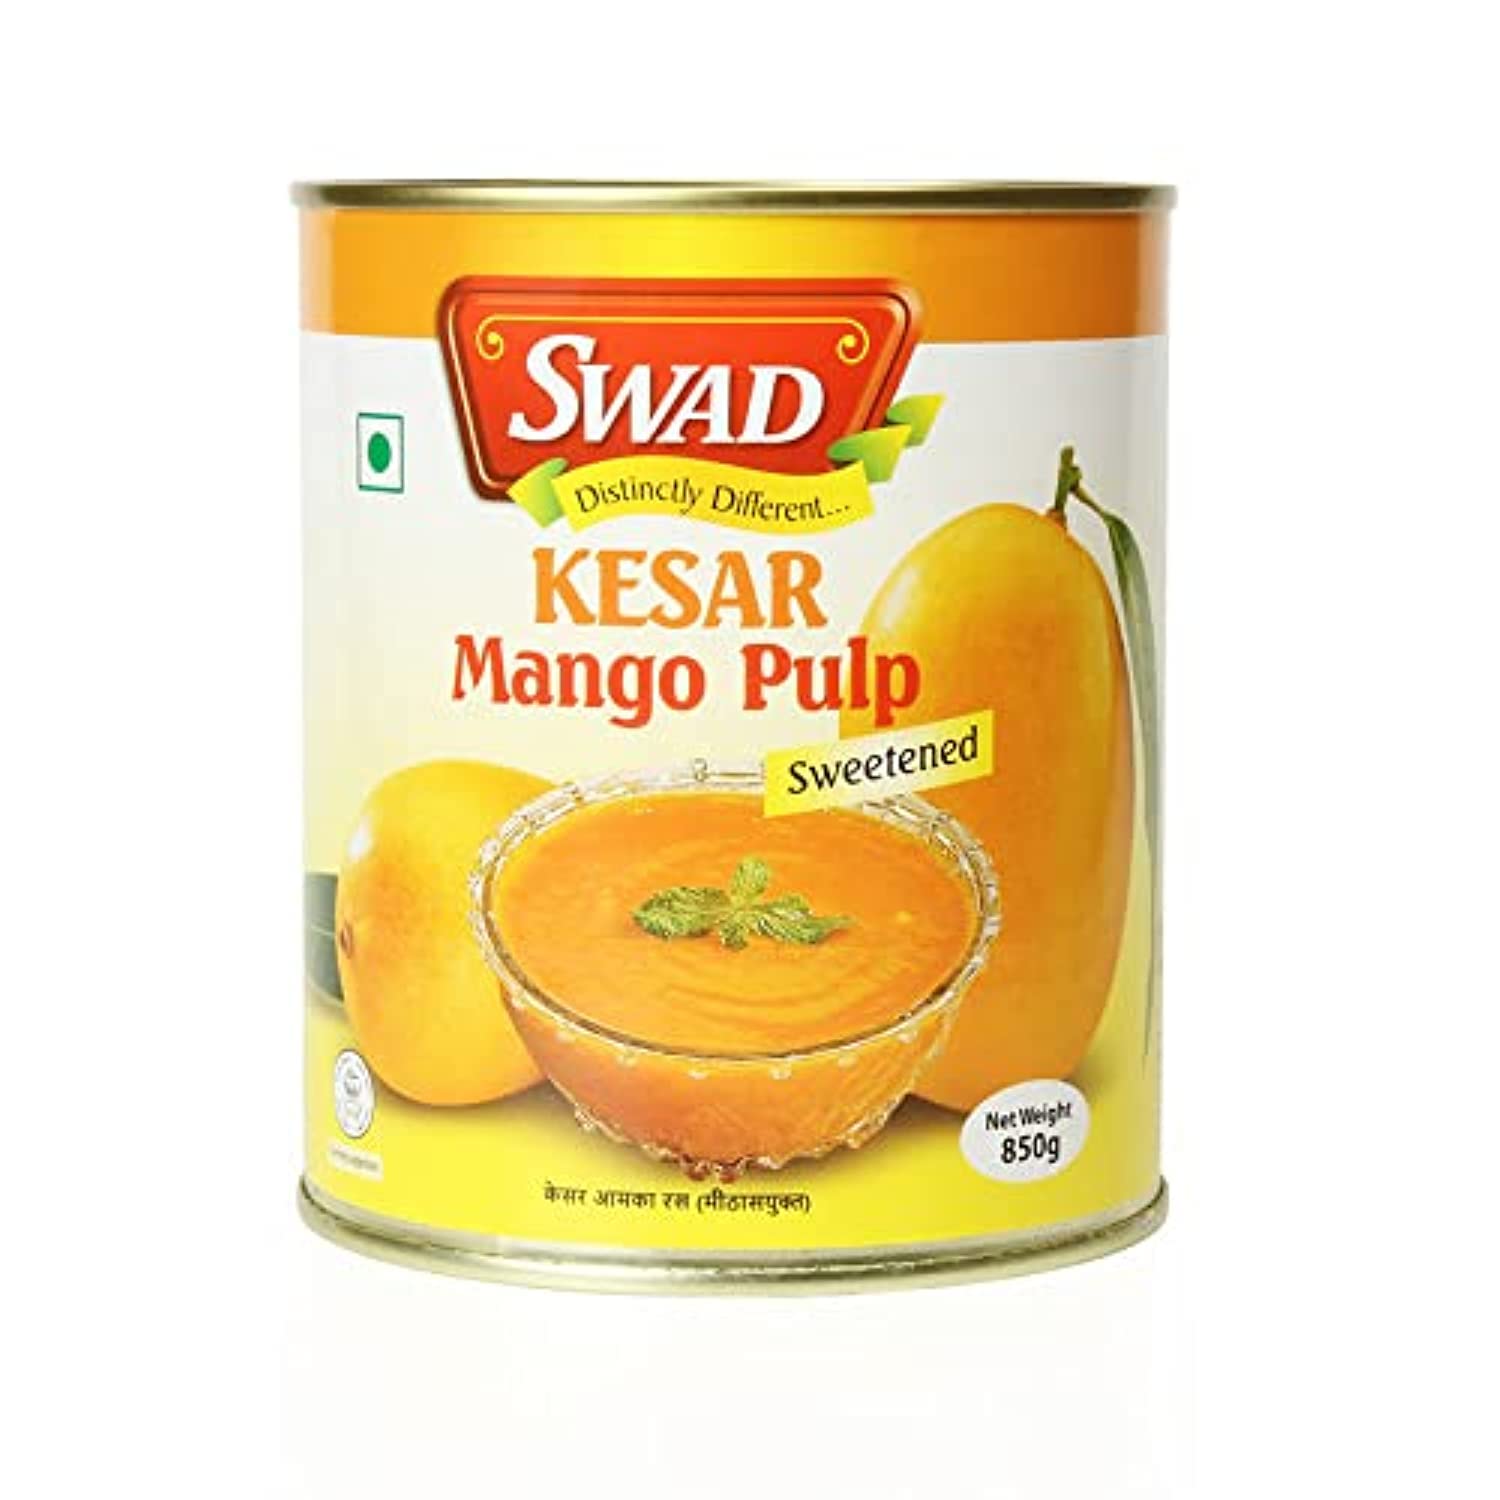 SWAD Kesar Mango Pulp 850g